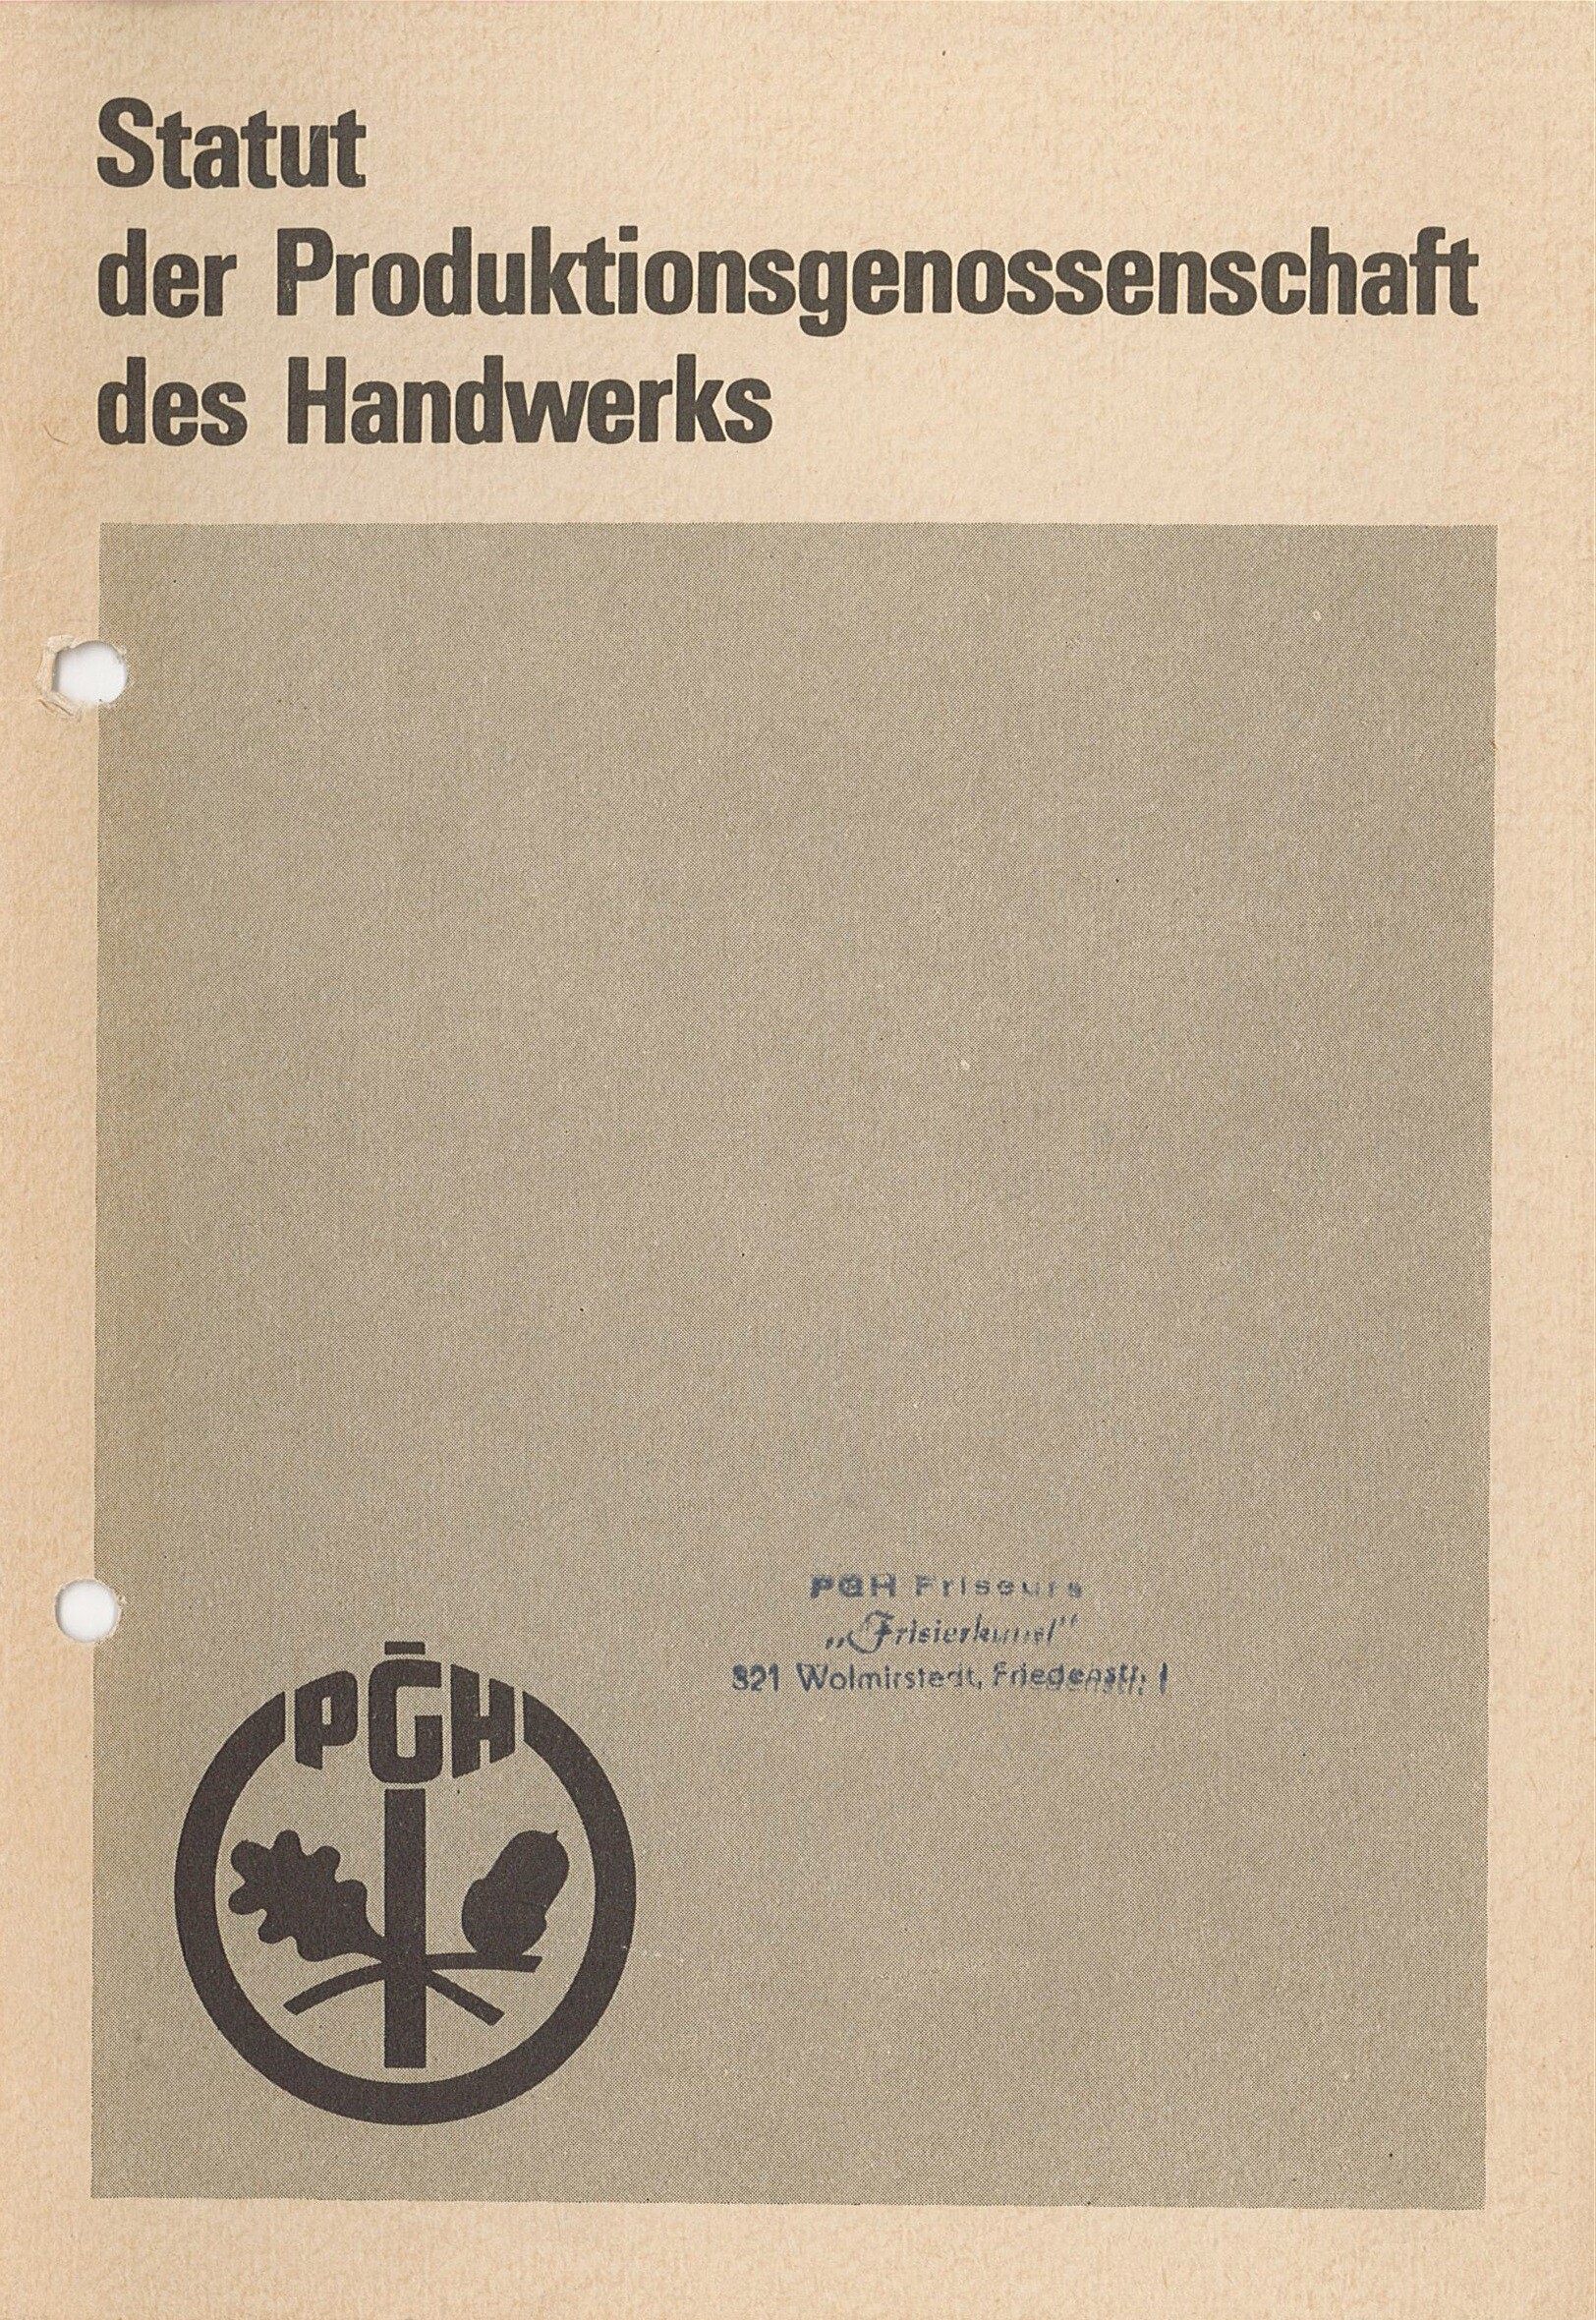 Statut der Produktionsgenossenschaft des Handwerks, 1973 (Museum Wolmirstedt RR-F)